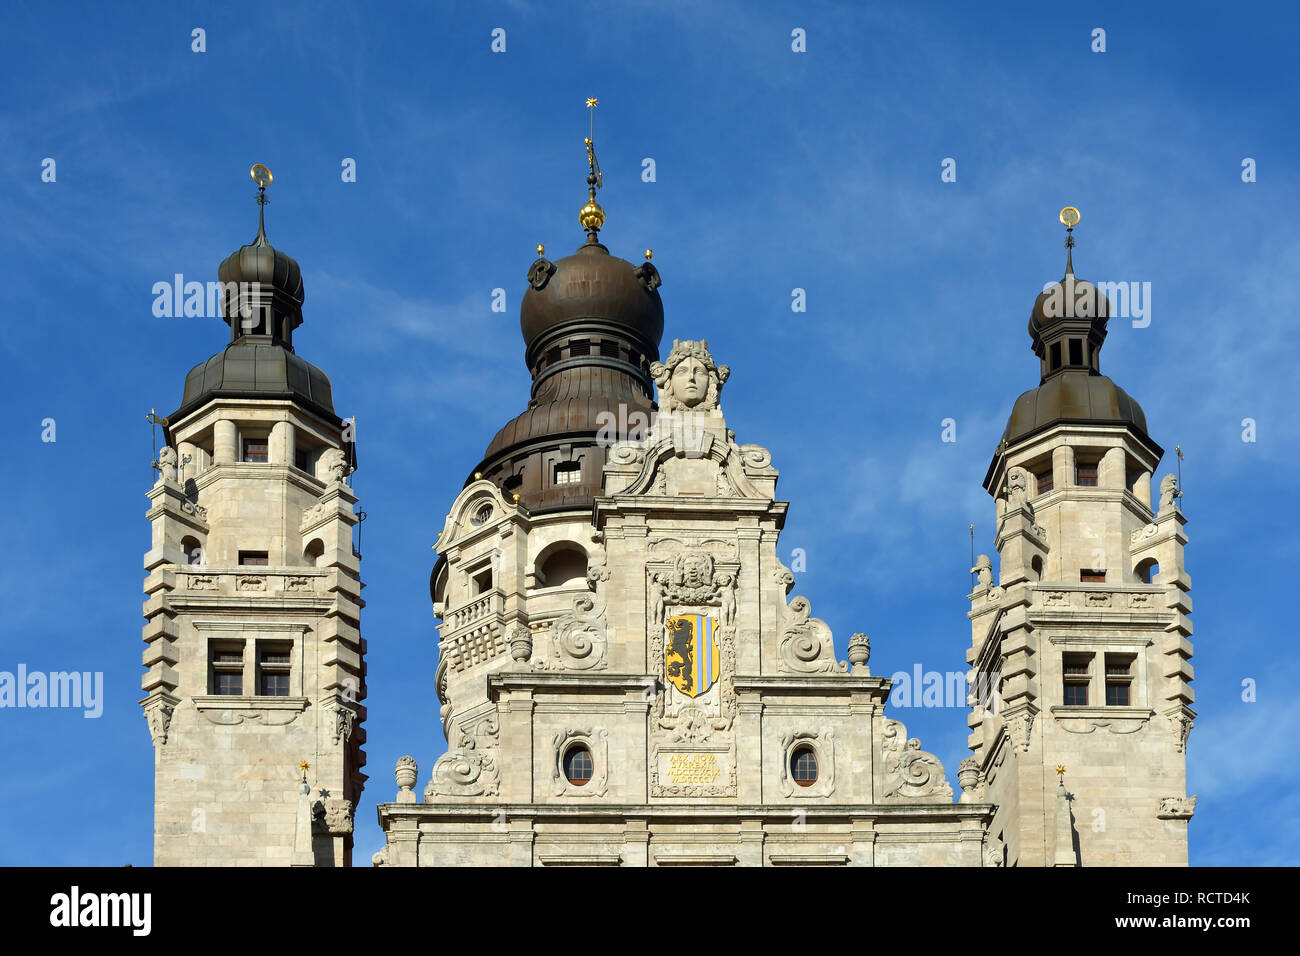 Haut de la nouvelle tour de ville de Leipzig avec les armoiries de la métropole saxonne - Allemagne. Banque D'Images